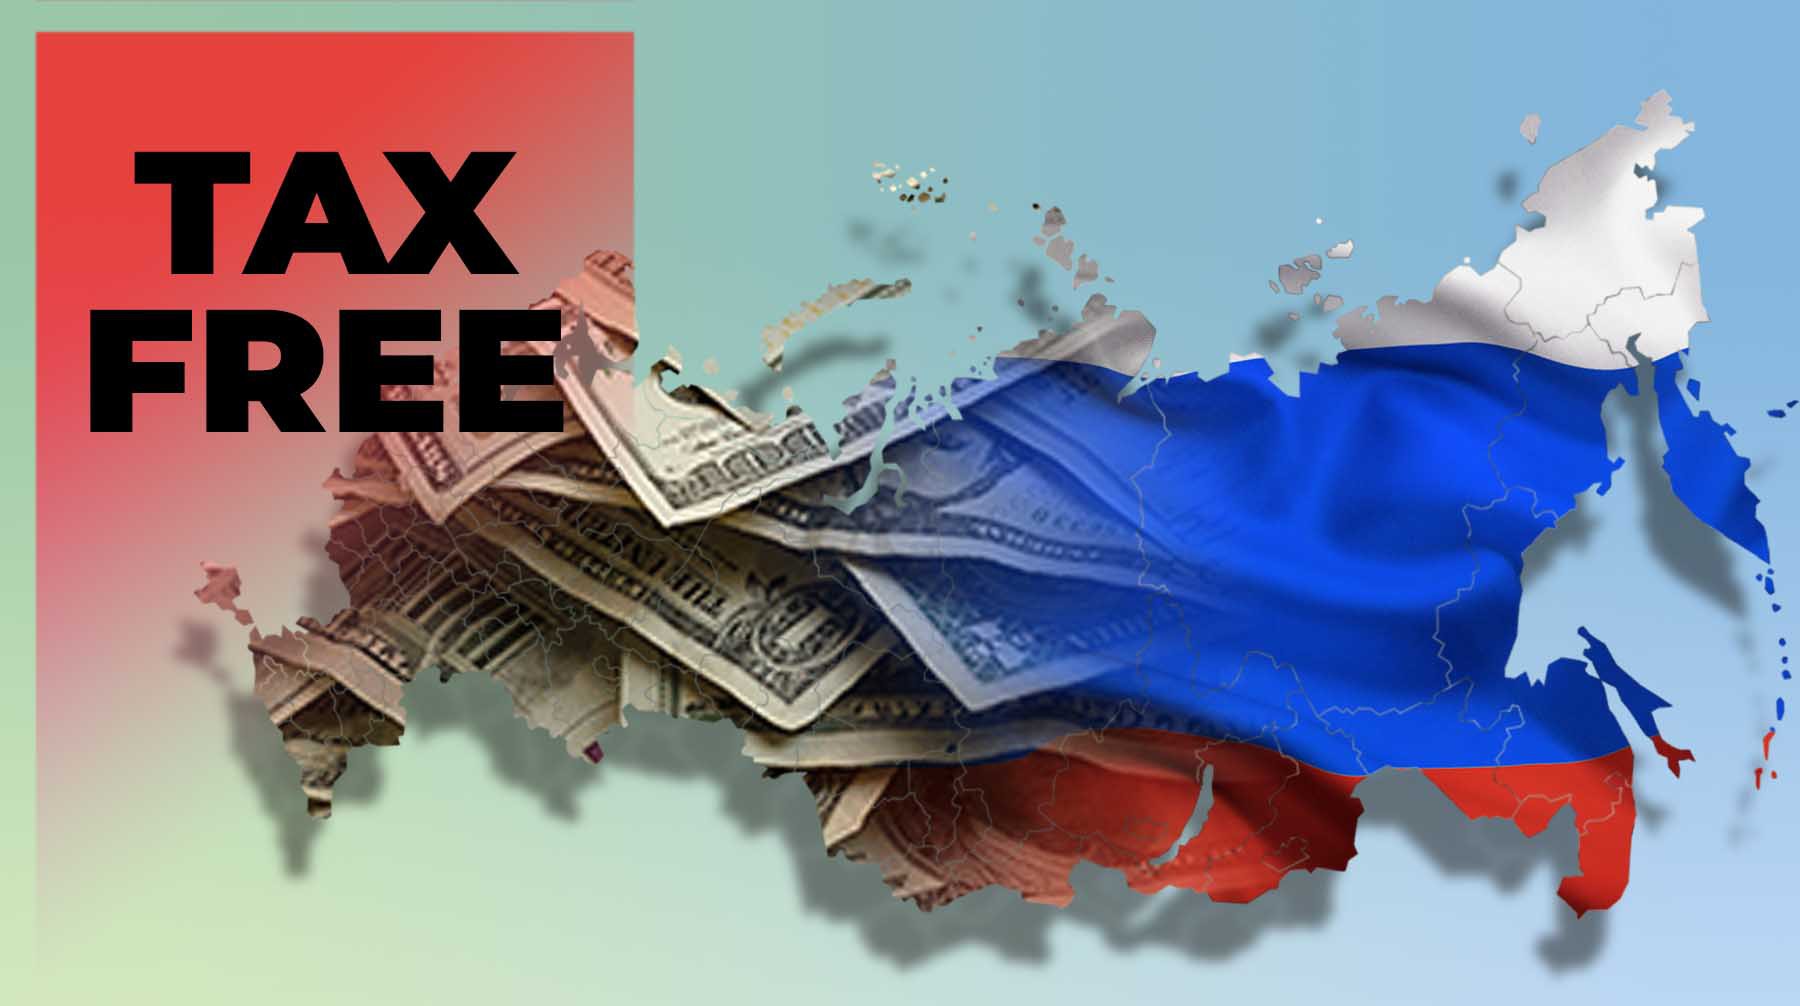 Tax free не спешит в Россию